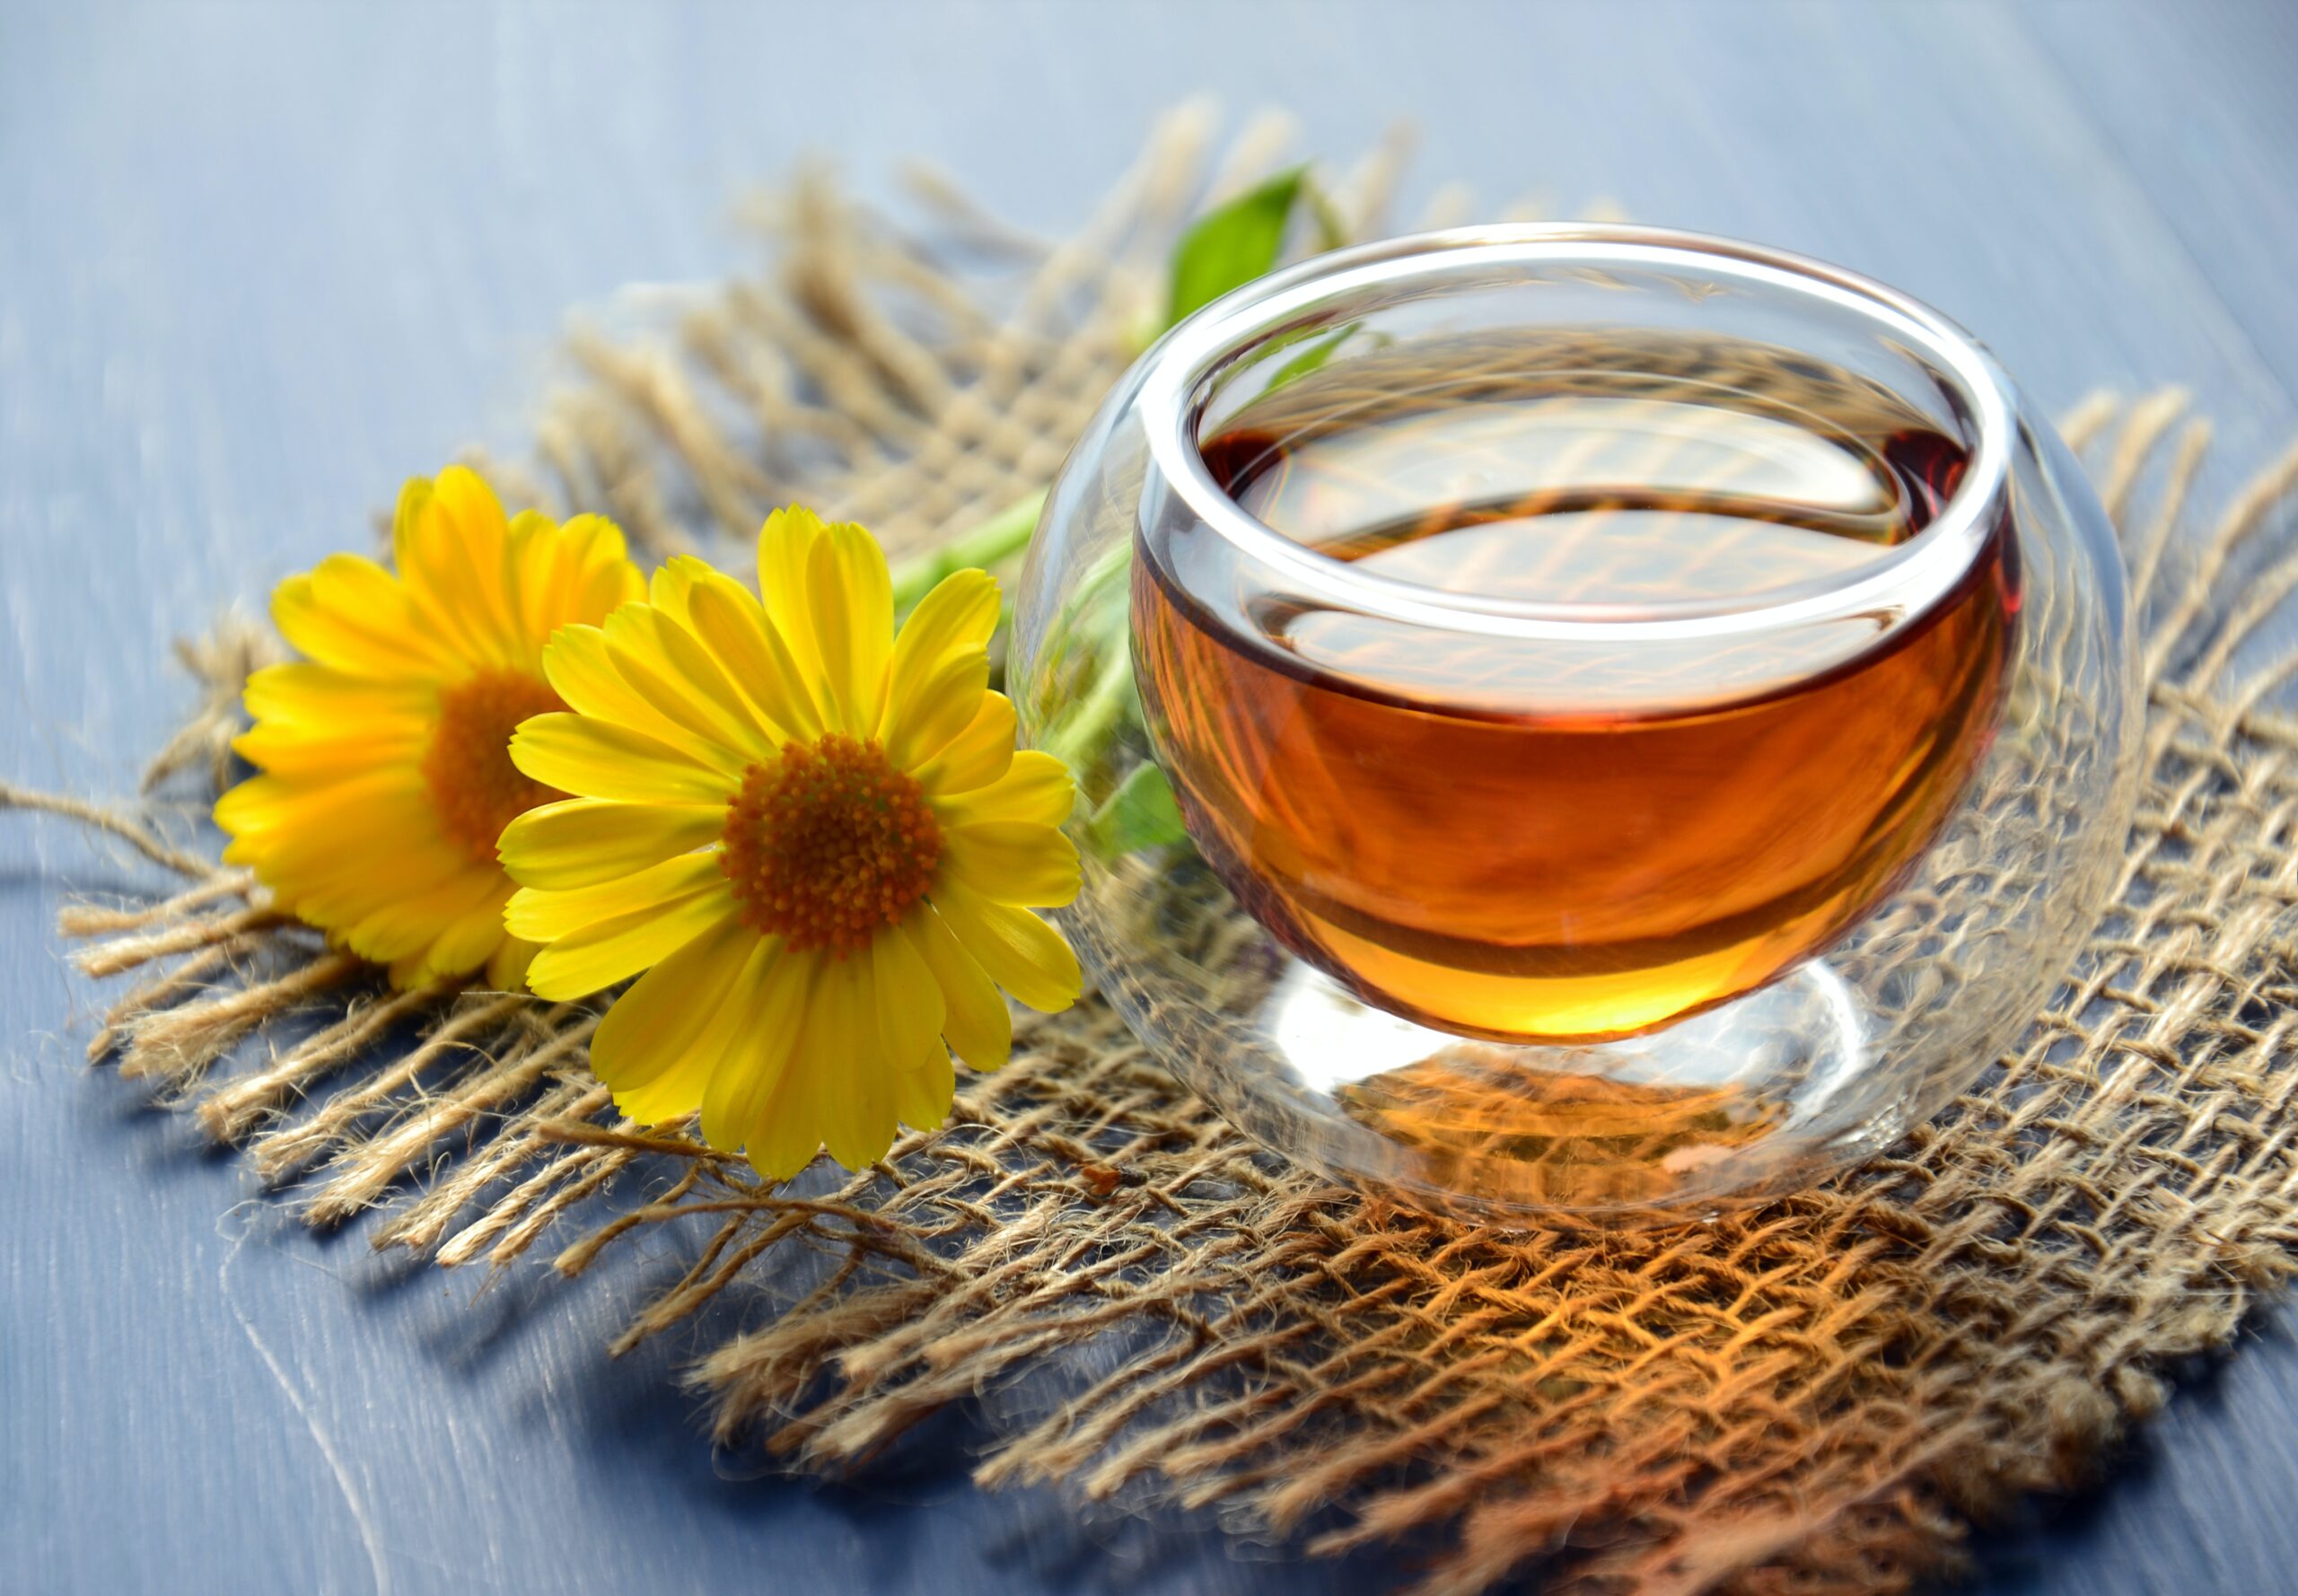 सुबह खाली पेट में Green Tea के चमत्कार: जानें इस आदत के अनूठे फायदे